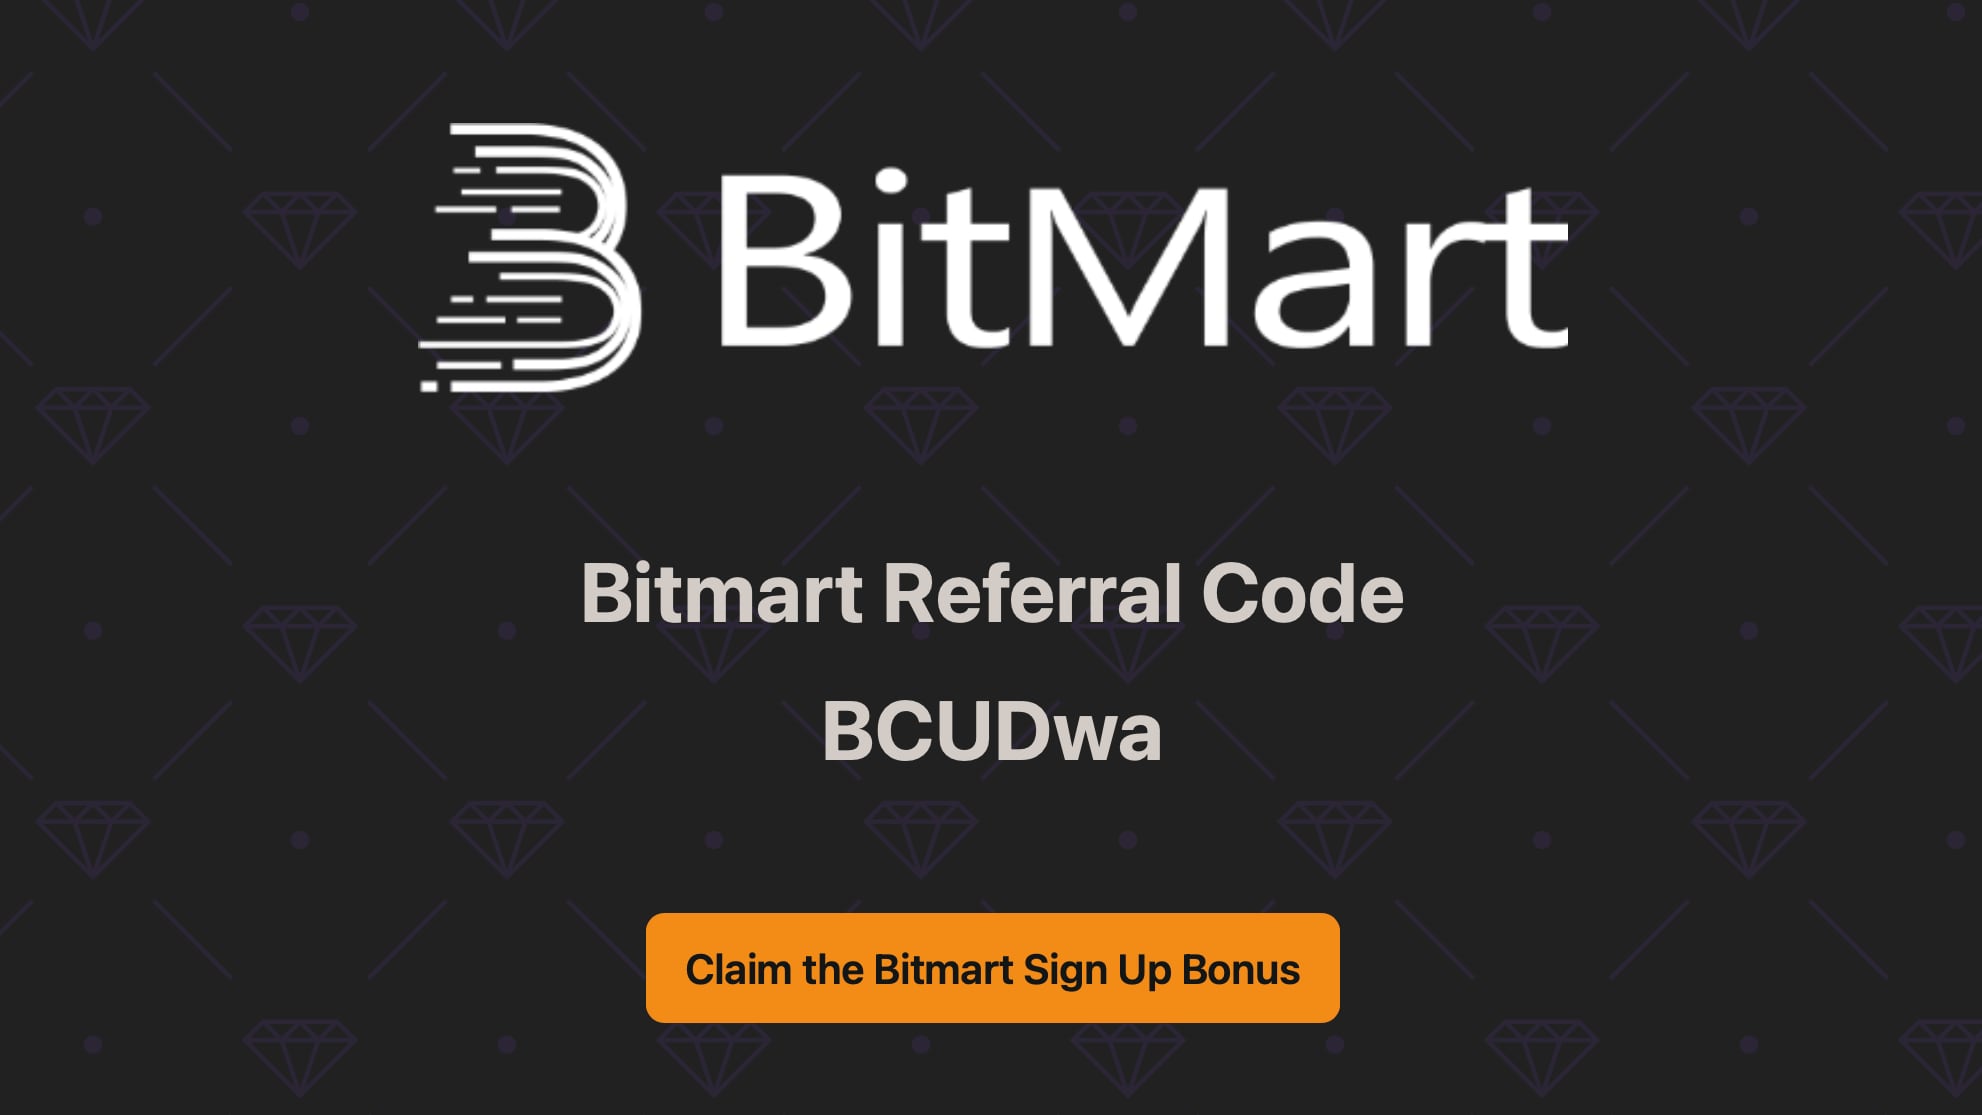 Bitmart Referral Code BCUDwa